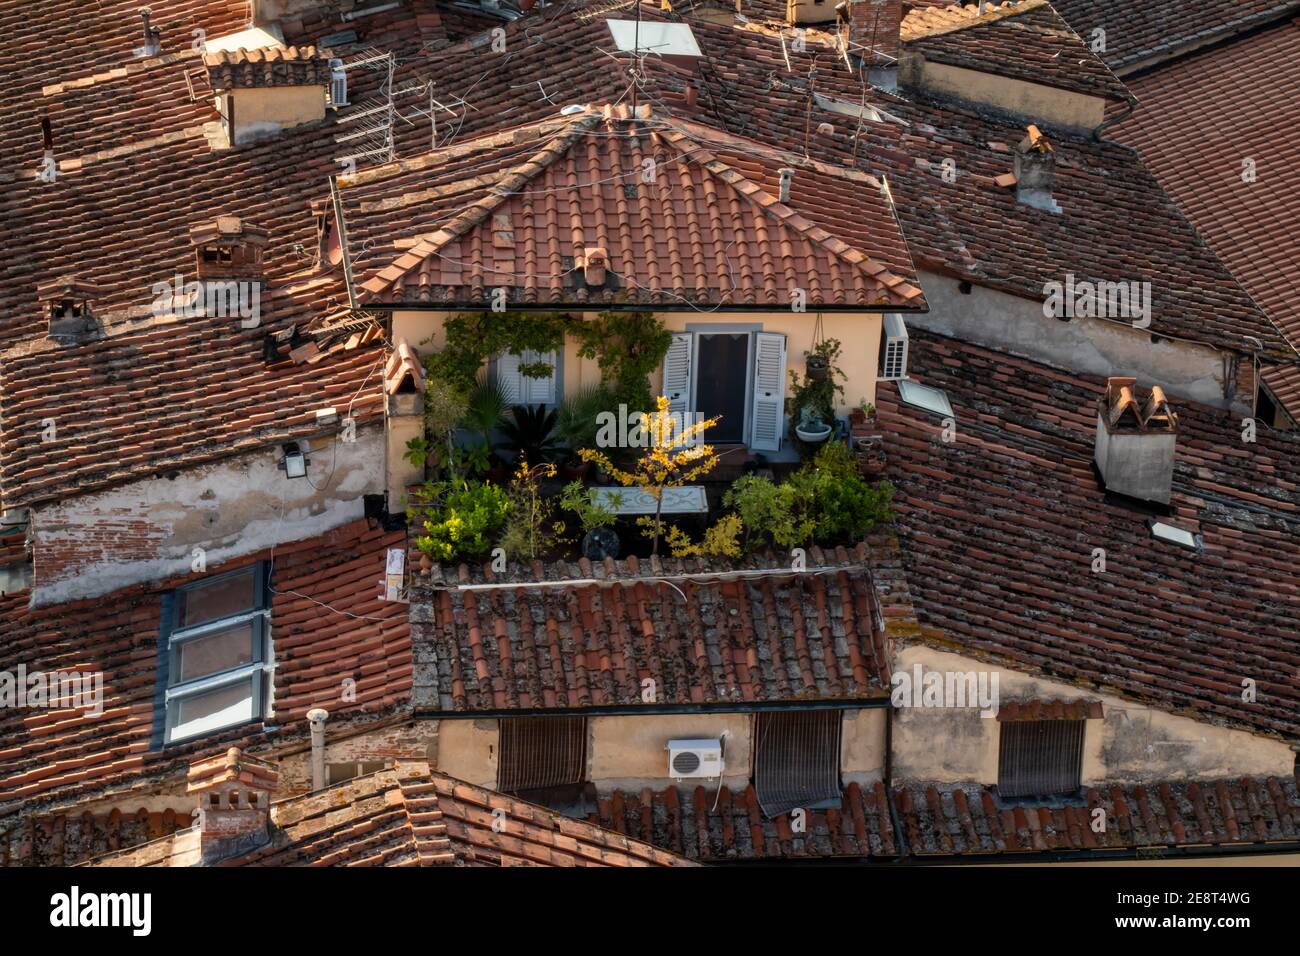 La vue depuis le sommet de la Torre Guinigi à Lucques, Toscane, Italie. Charmants appartements sur le toit avec fleurs sur le patio et toits de tuiles rouges. Banque D'Images